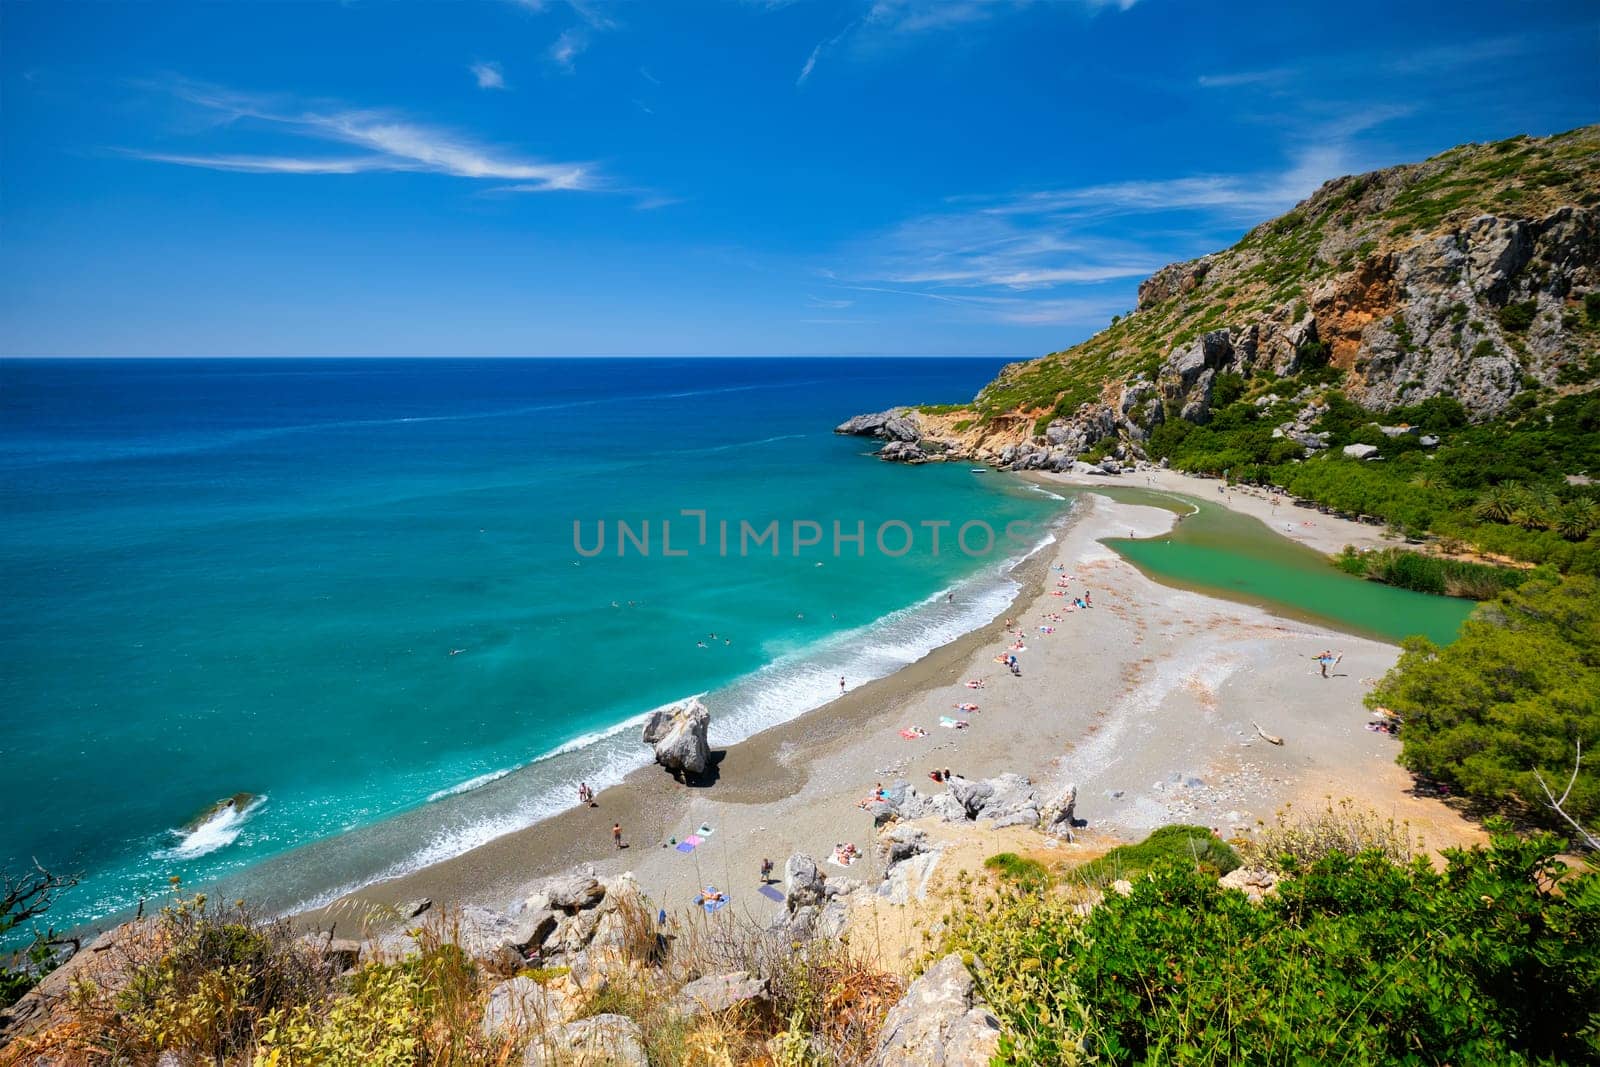 View of Preveli beach on Crete island in Greece by dimol